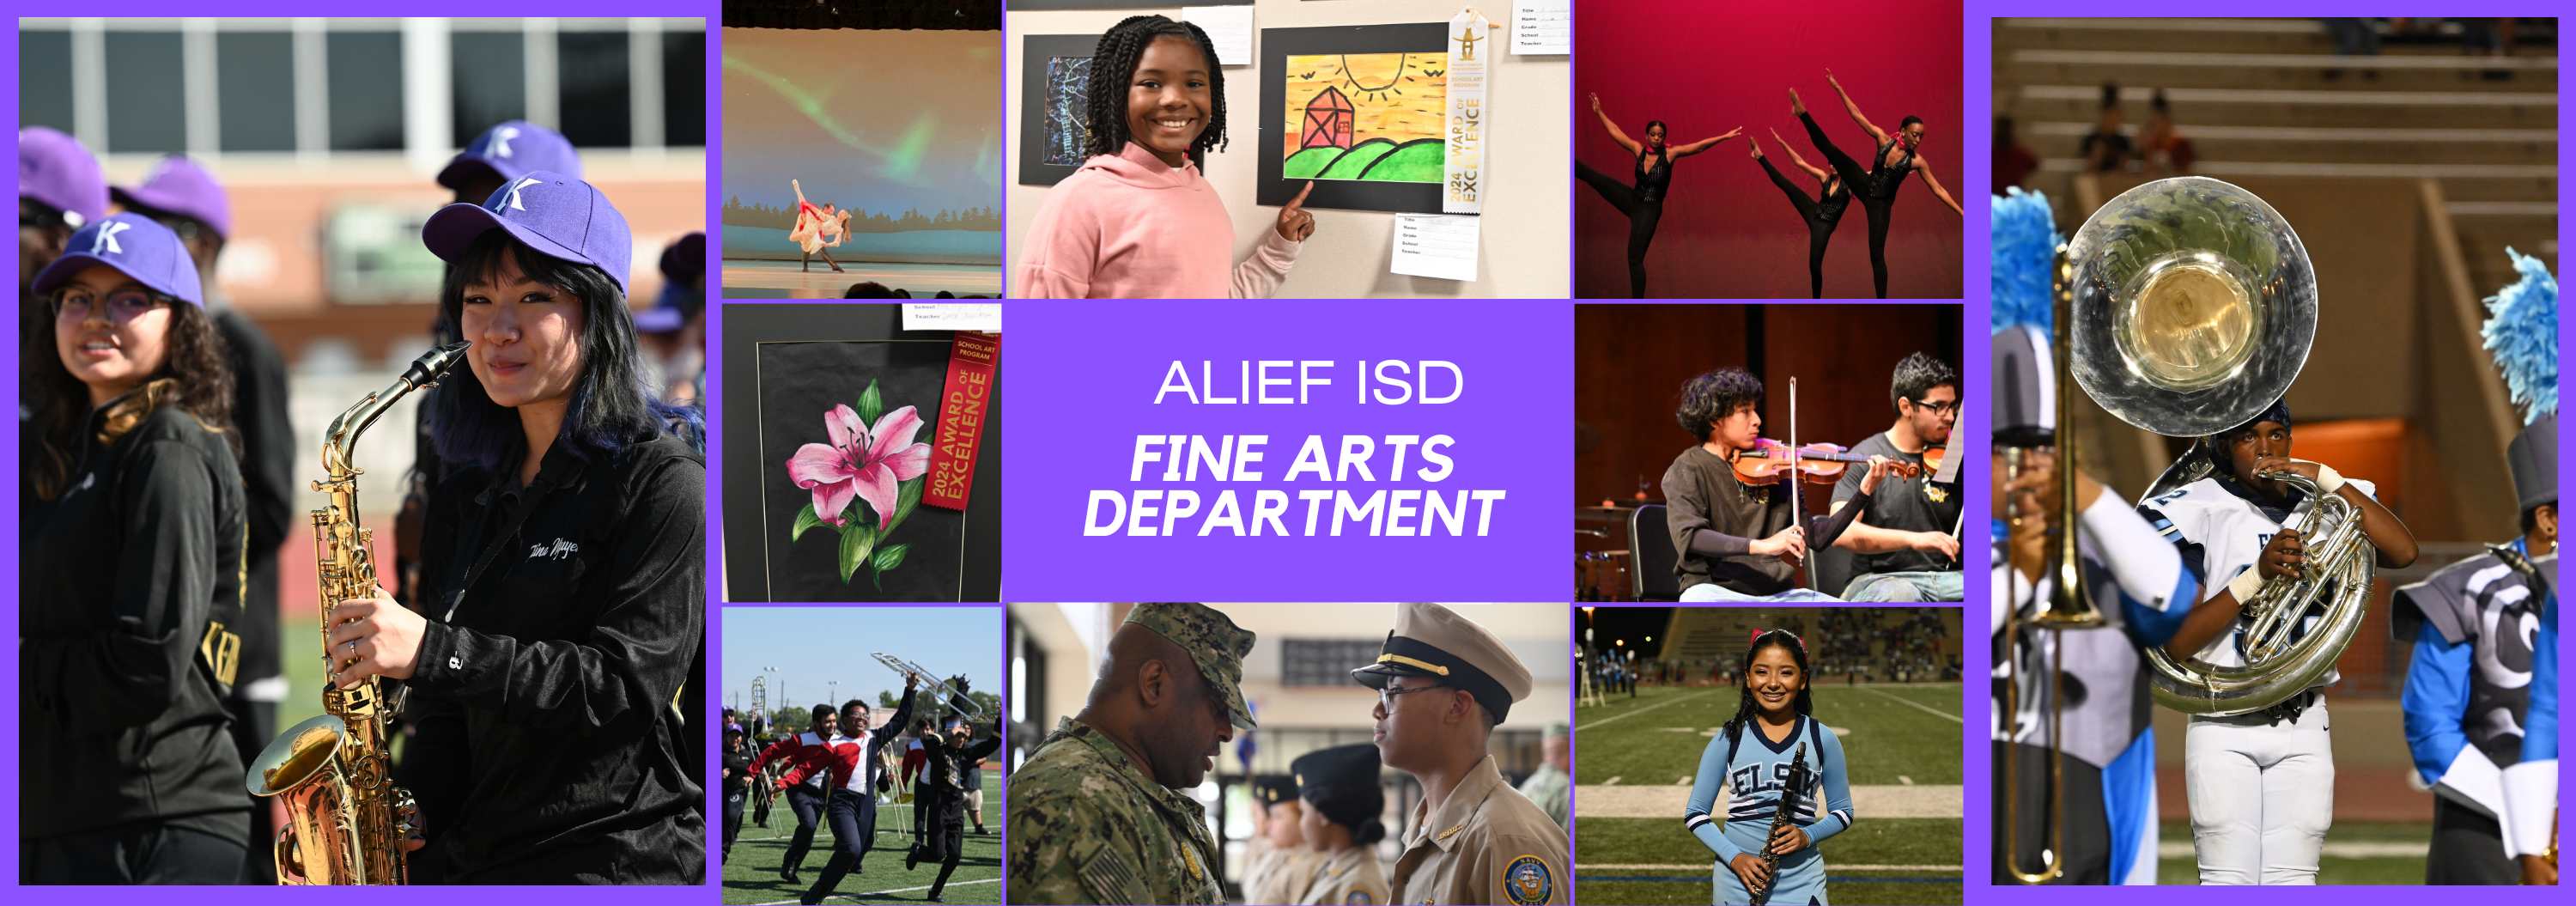 Alief ISD Fine Arts Department Collage